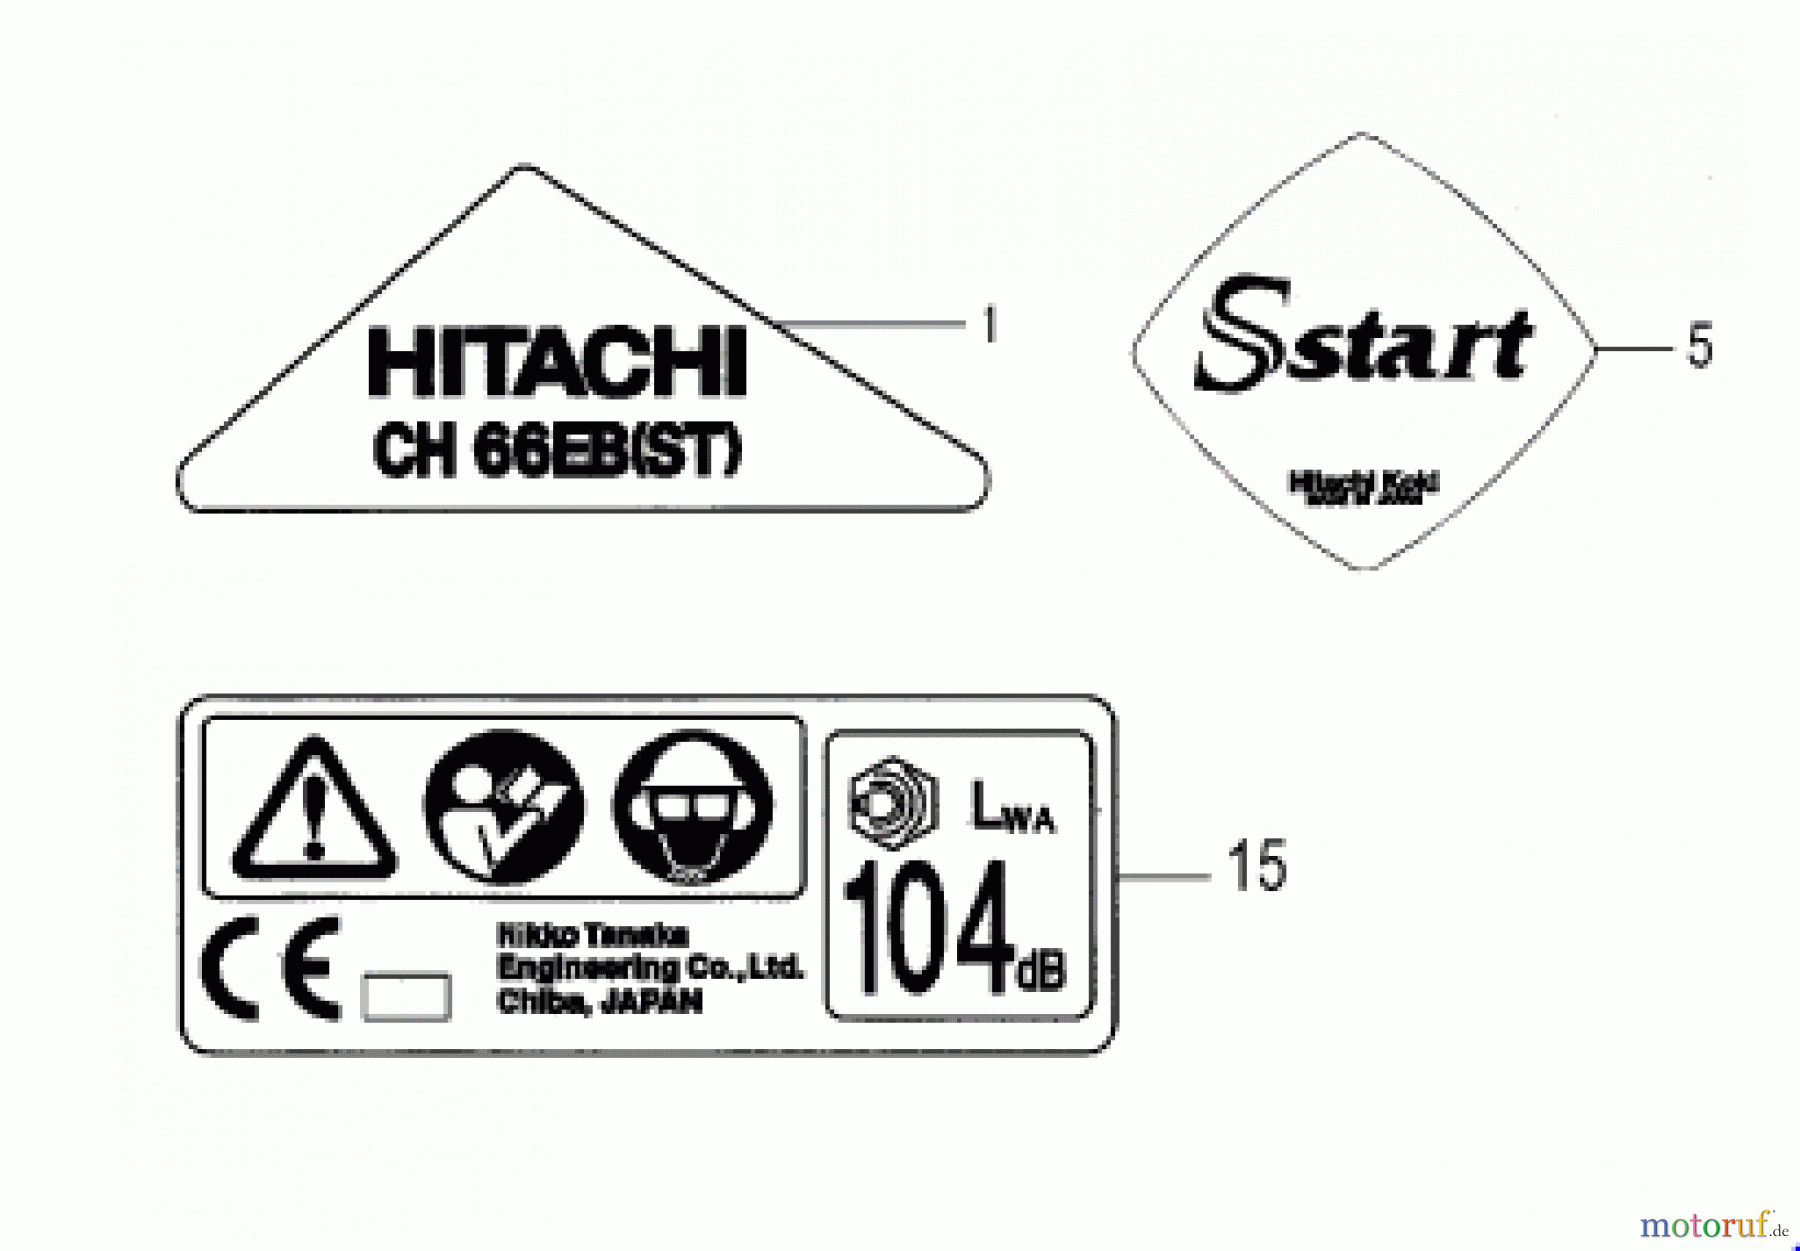  Hitachi Heckenscheren ET-Liste CH66EB(ST) Seite 10